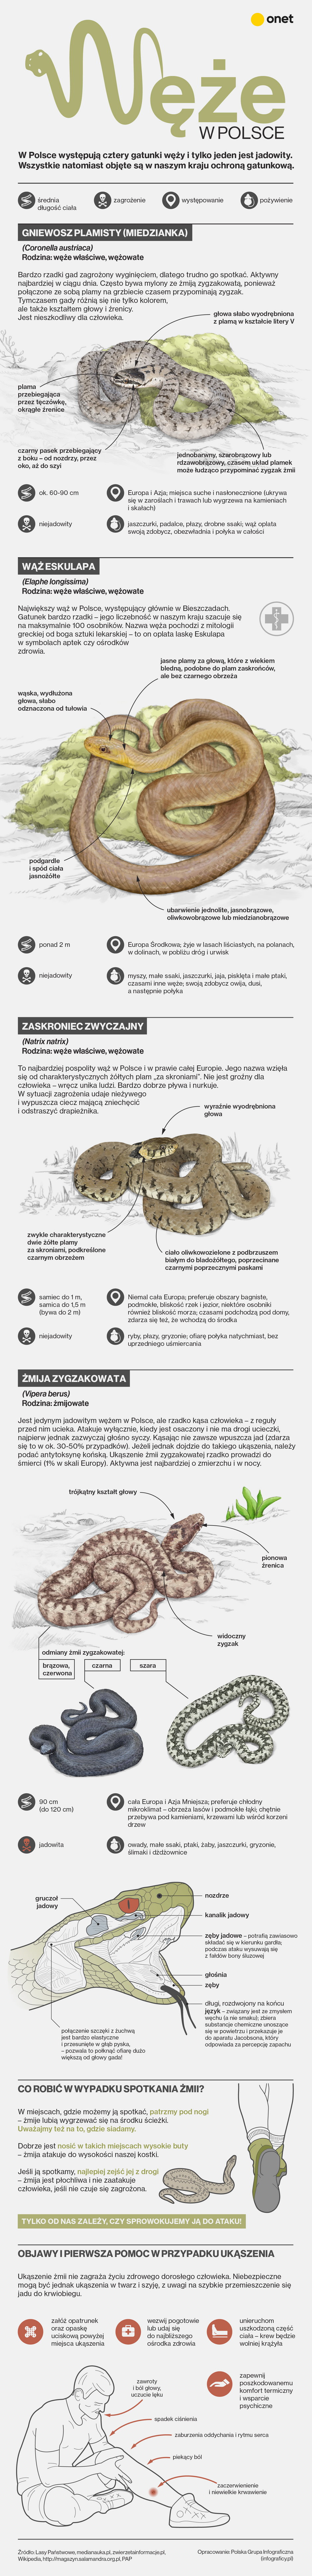 Węże w Polsce